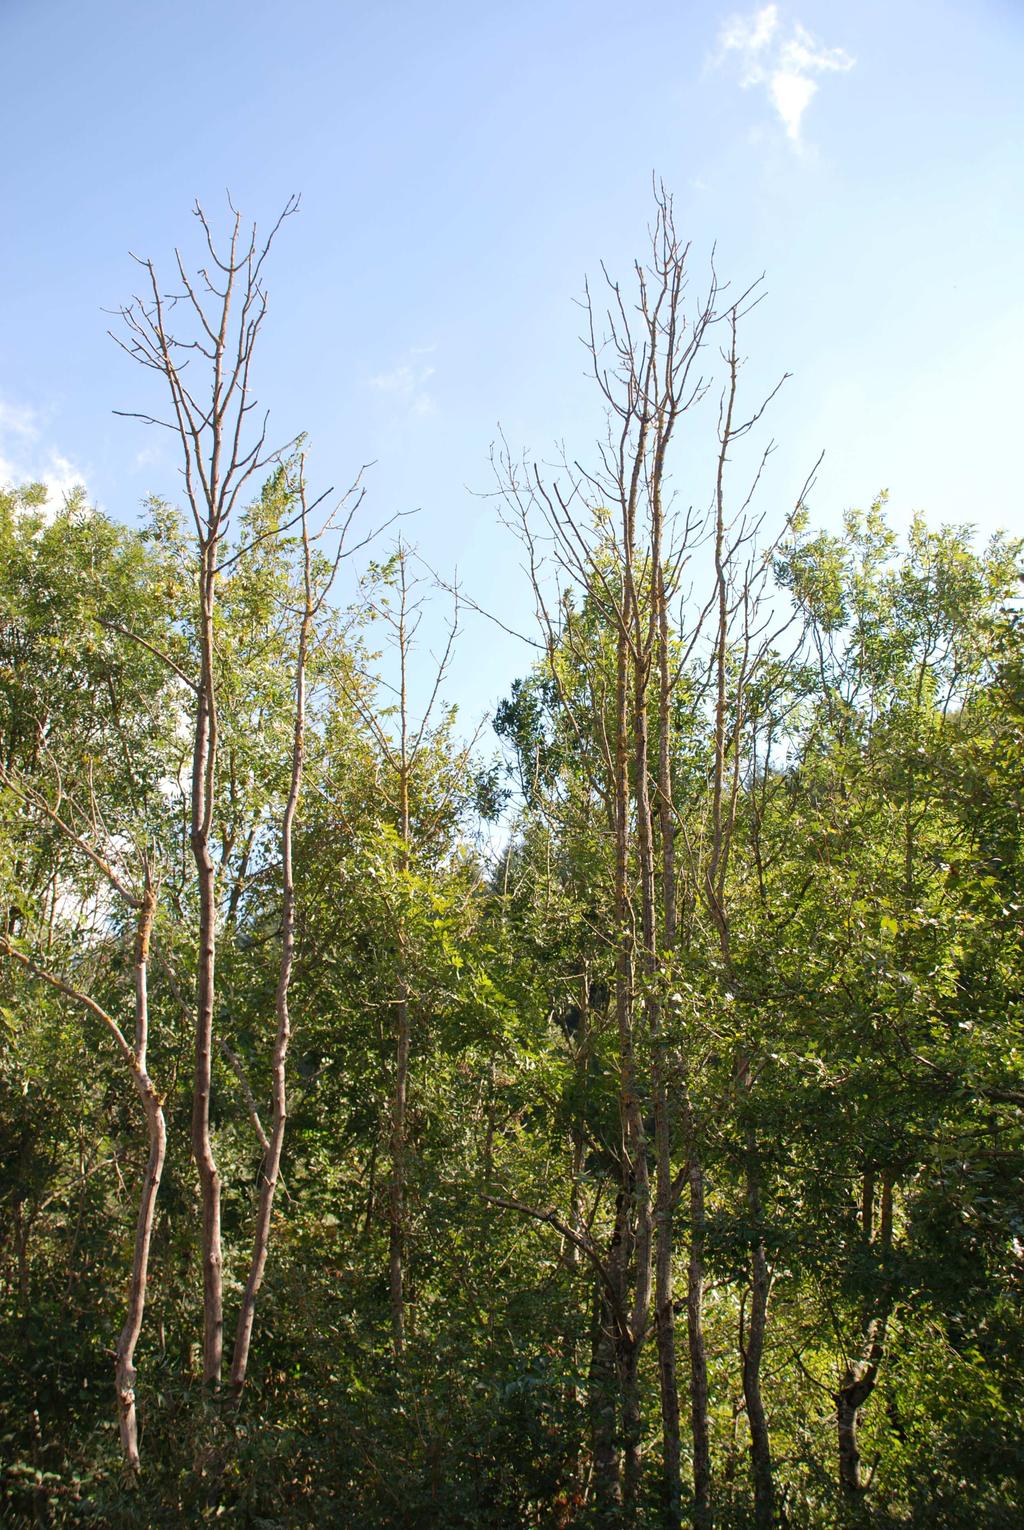 Date le condizioni ambientali e la vegetazione presente è molto probabile che Chalara fraxinea si diffonda spontaneamente sui frassini della valle e si muova ulteriormente verso le valli limitrofe